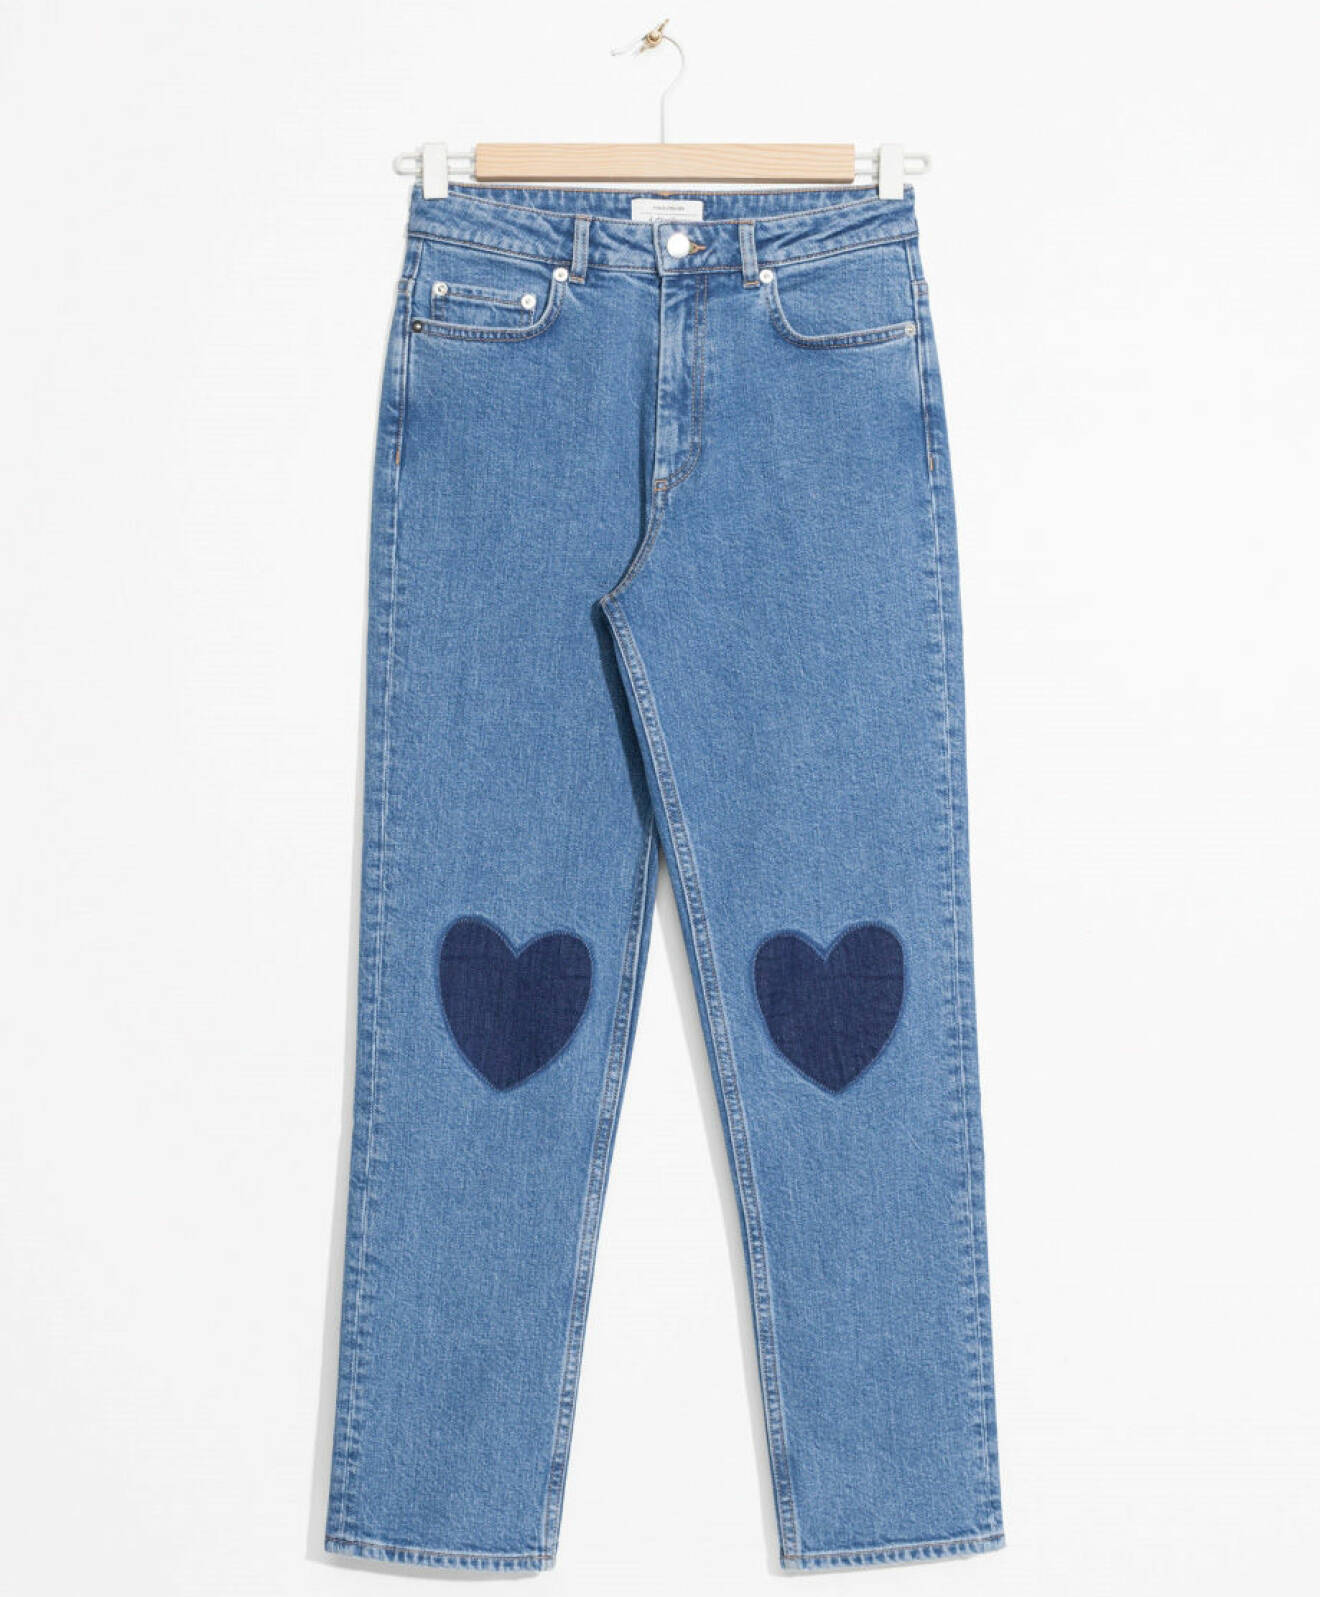 jeans hjärta patches